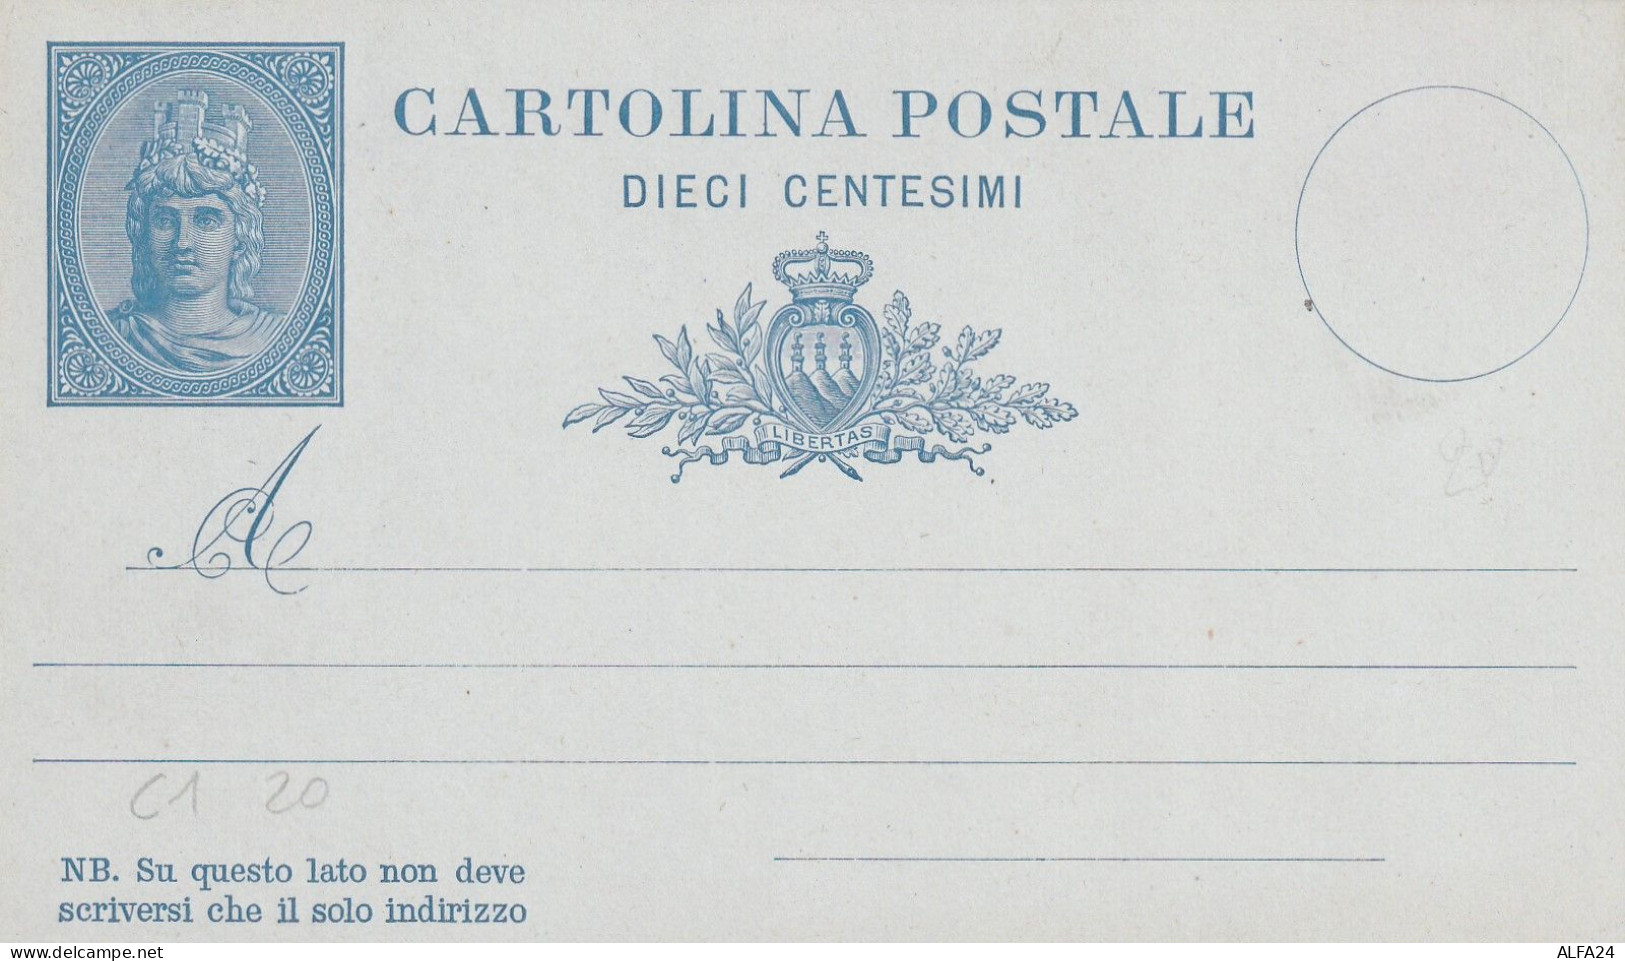 INTERO POSTALE NUOVO C.10 1882 SAN MARINO (ZP3797 - Enteros Postales